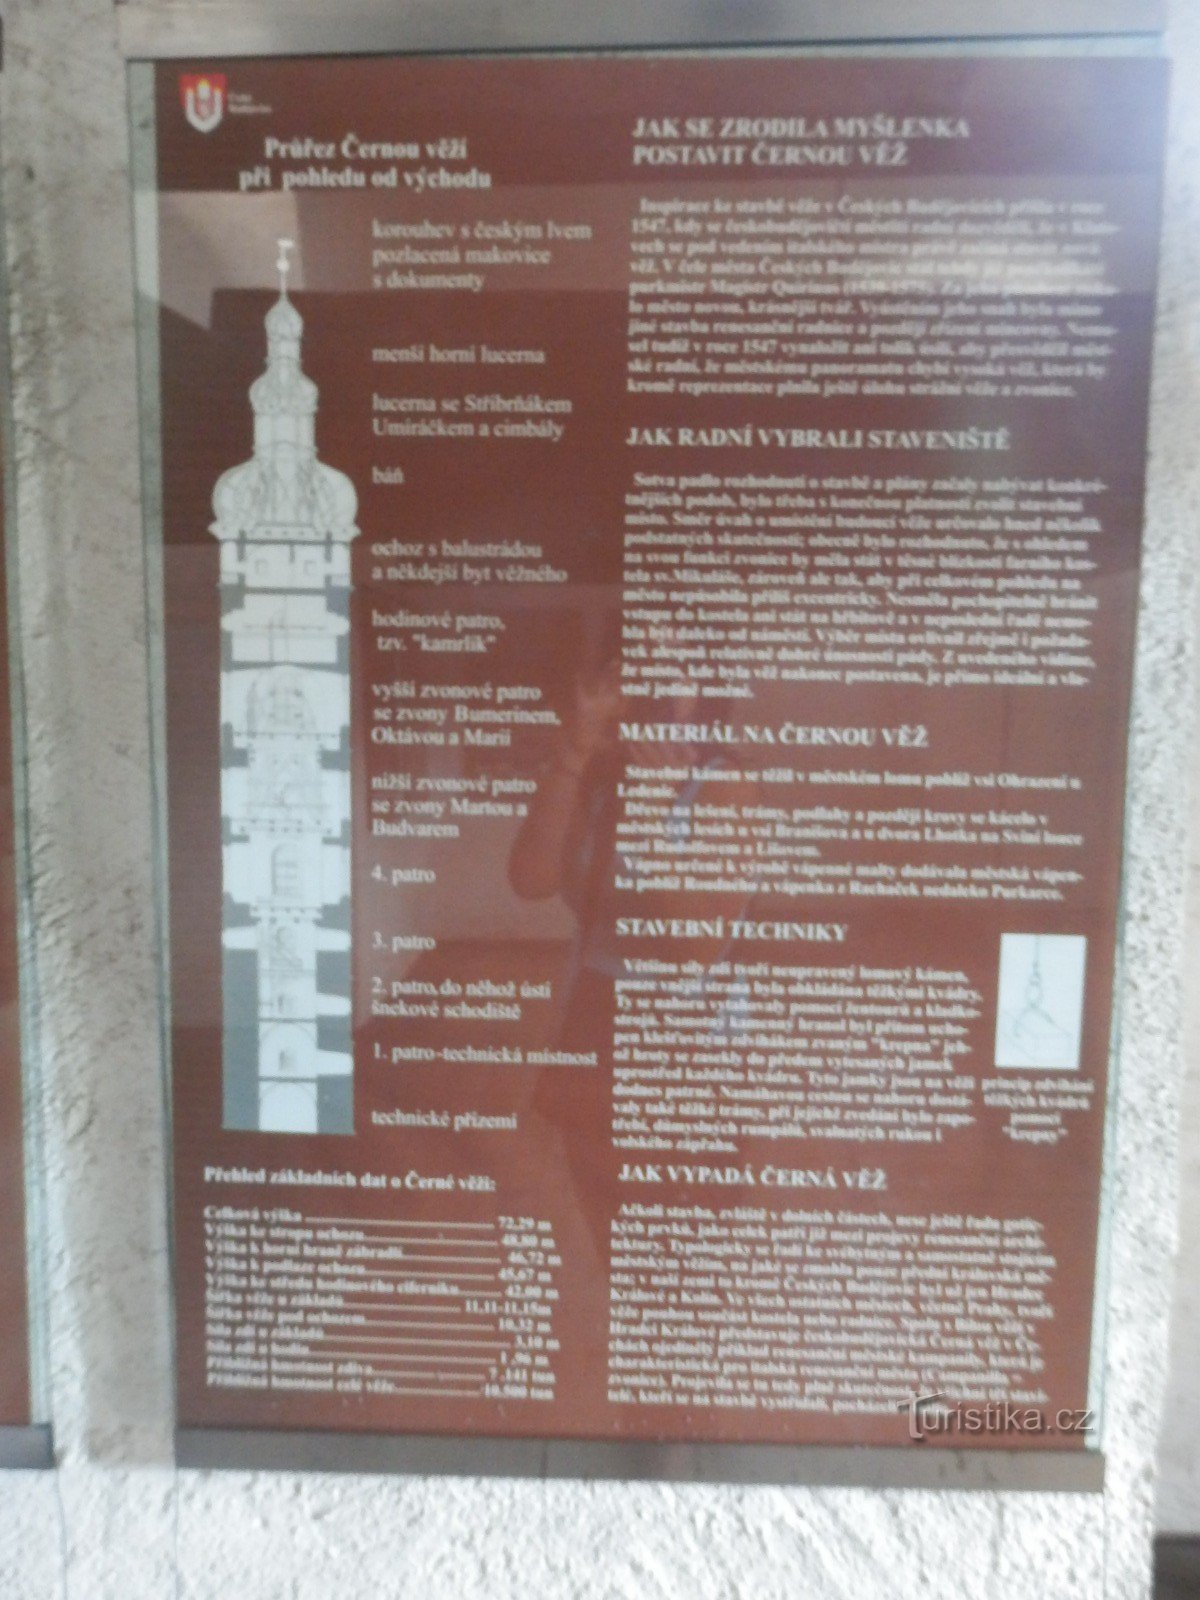 Czarna Wieża - Czeskie Budziejowice